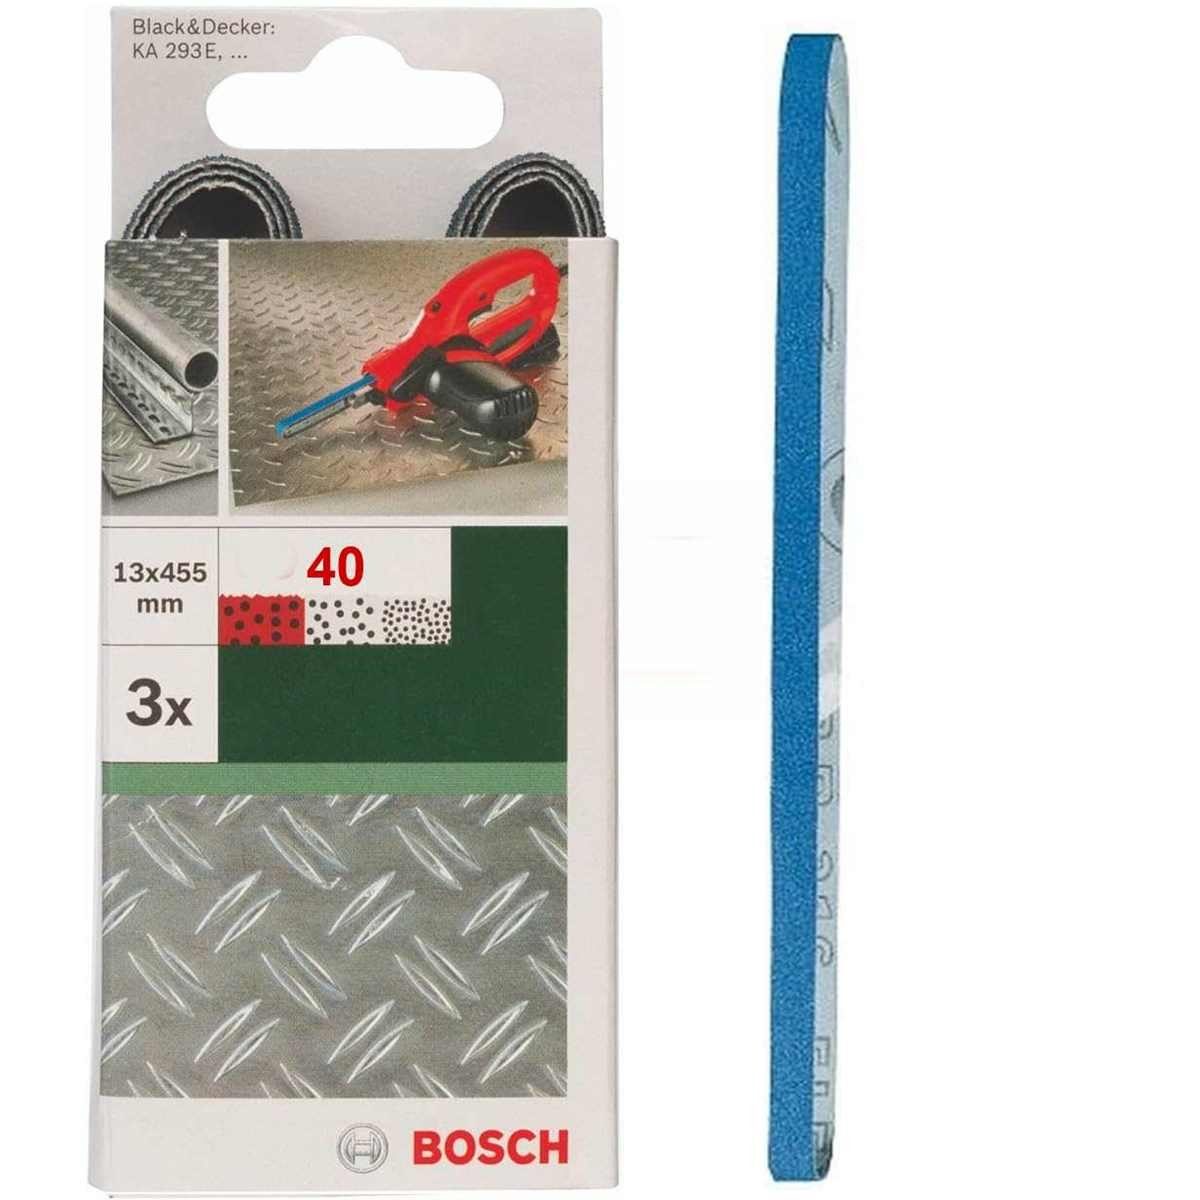 BOSCH Bohrfutter Bosch 3 Schleifbänder für B+D Powerfile KA 293E 13 x 451 mm, K 40